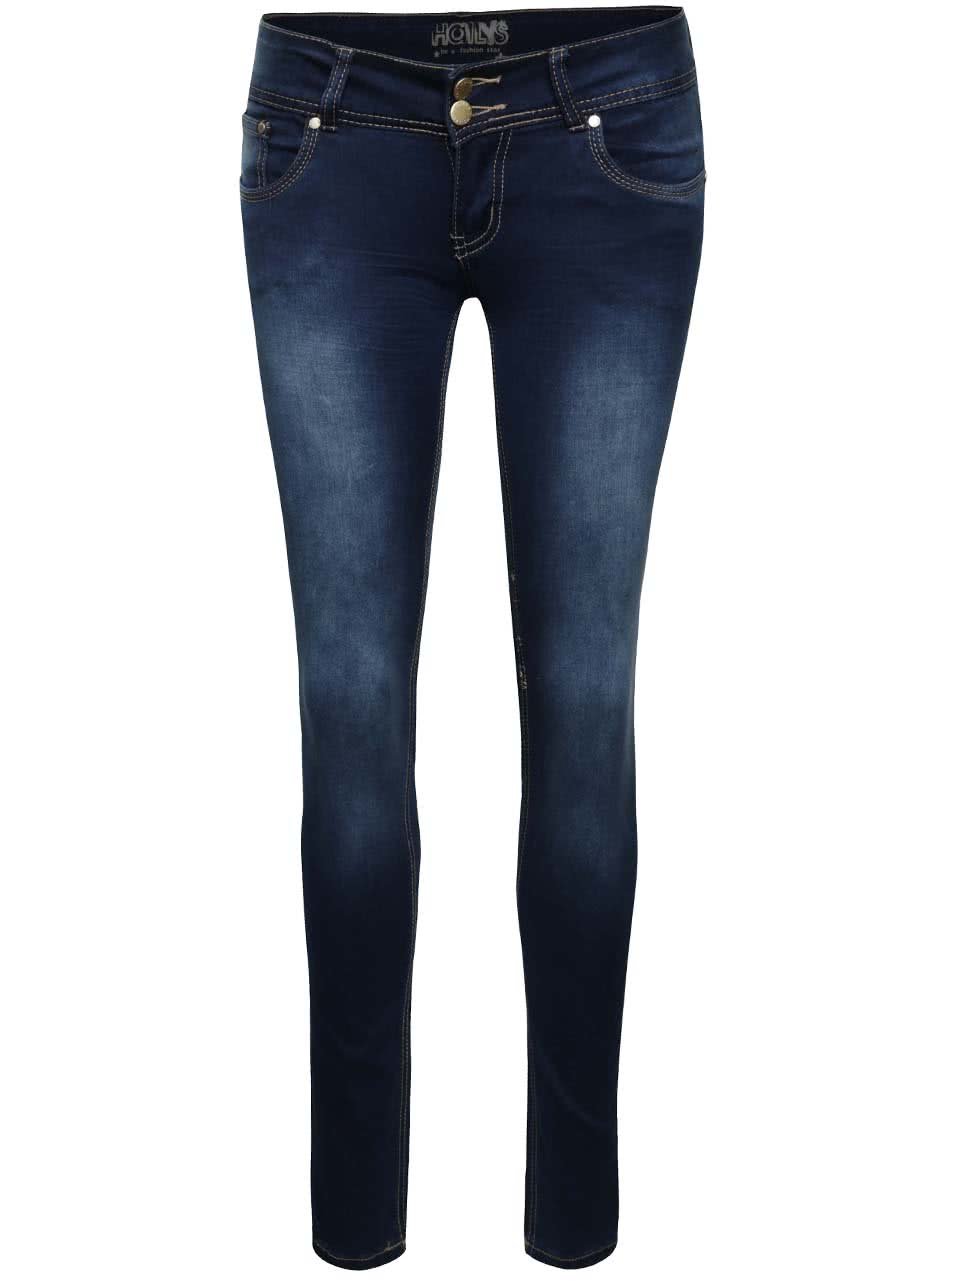 Tmavě modré džíny s nízkým pasem Haily´s Kitty